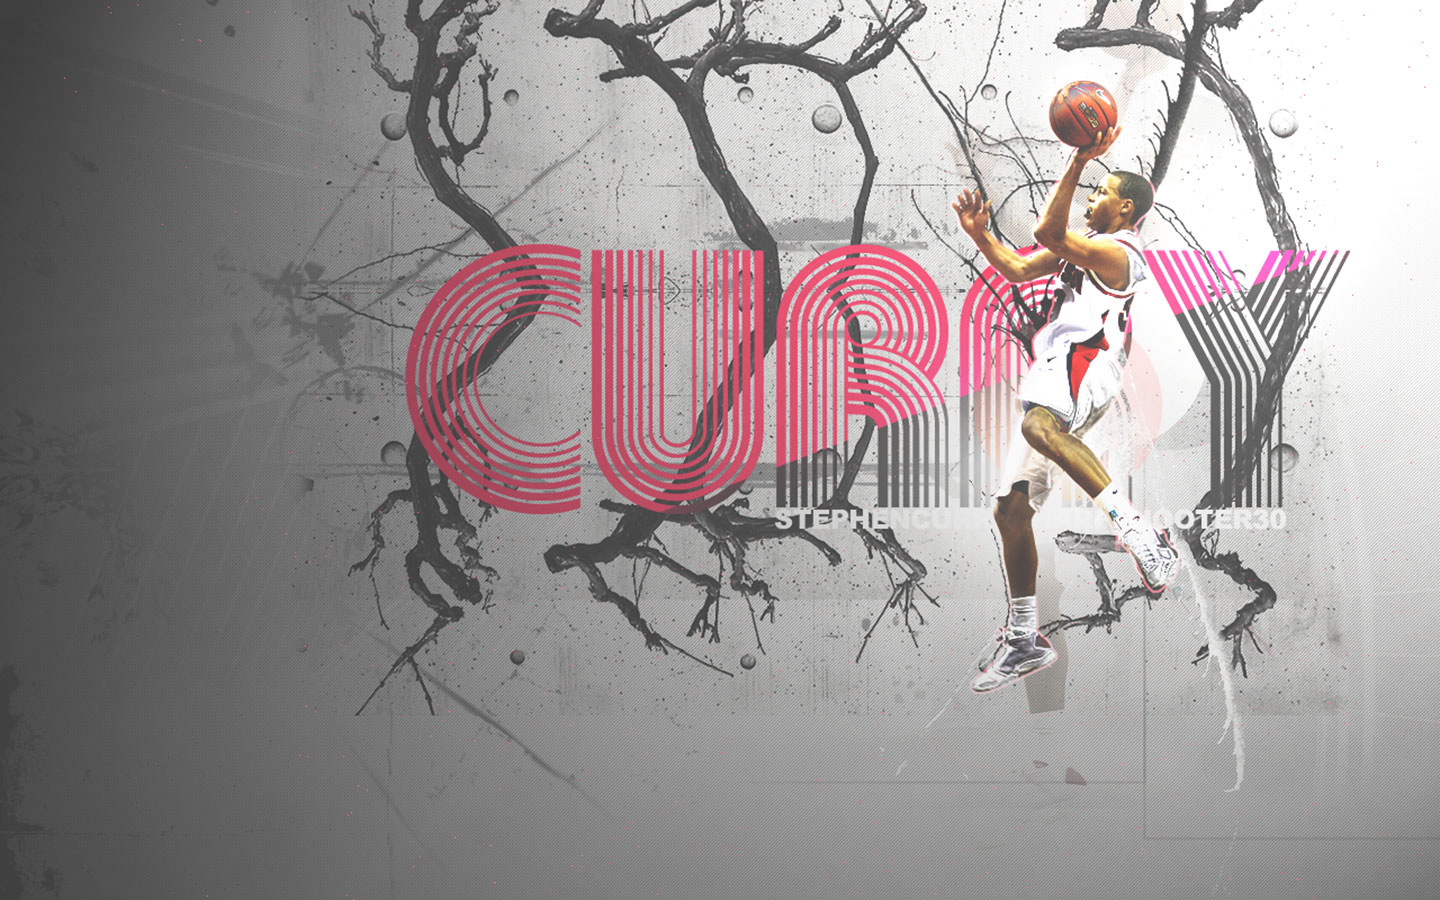 Stephen Curry Wallpaper Nba Basket Ball